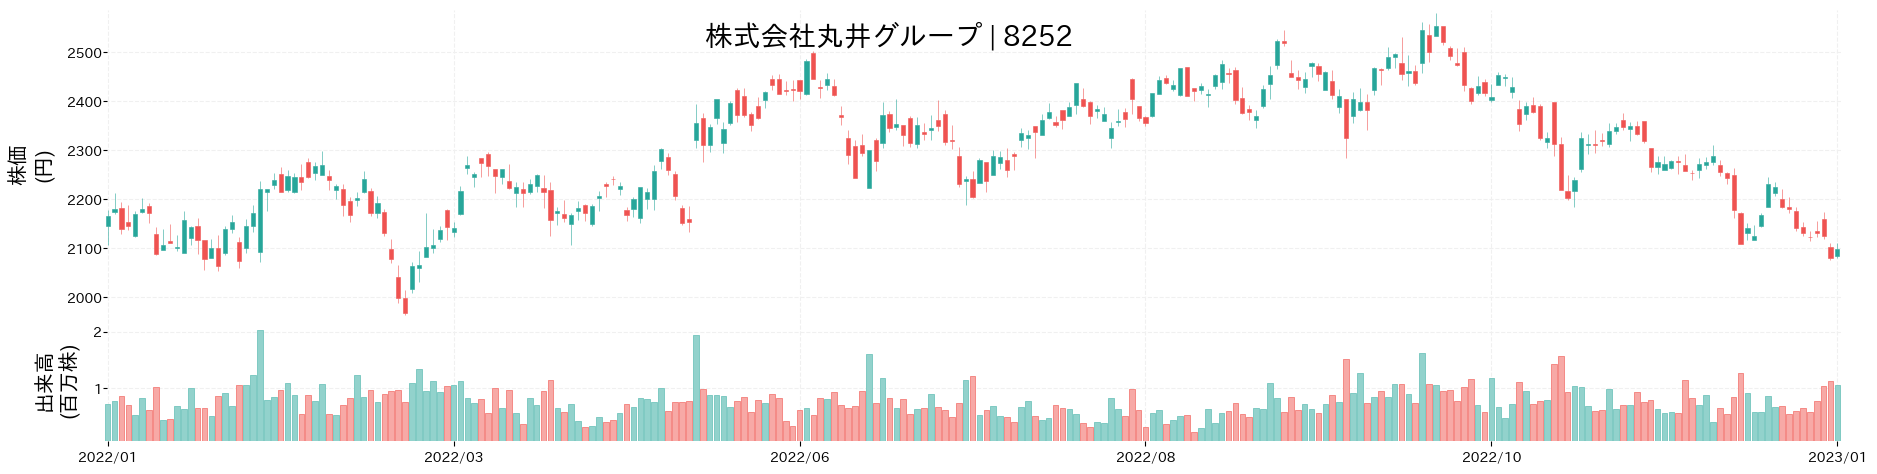 丸井グループの株価推移(2022)